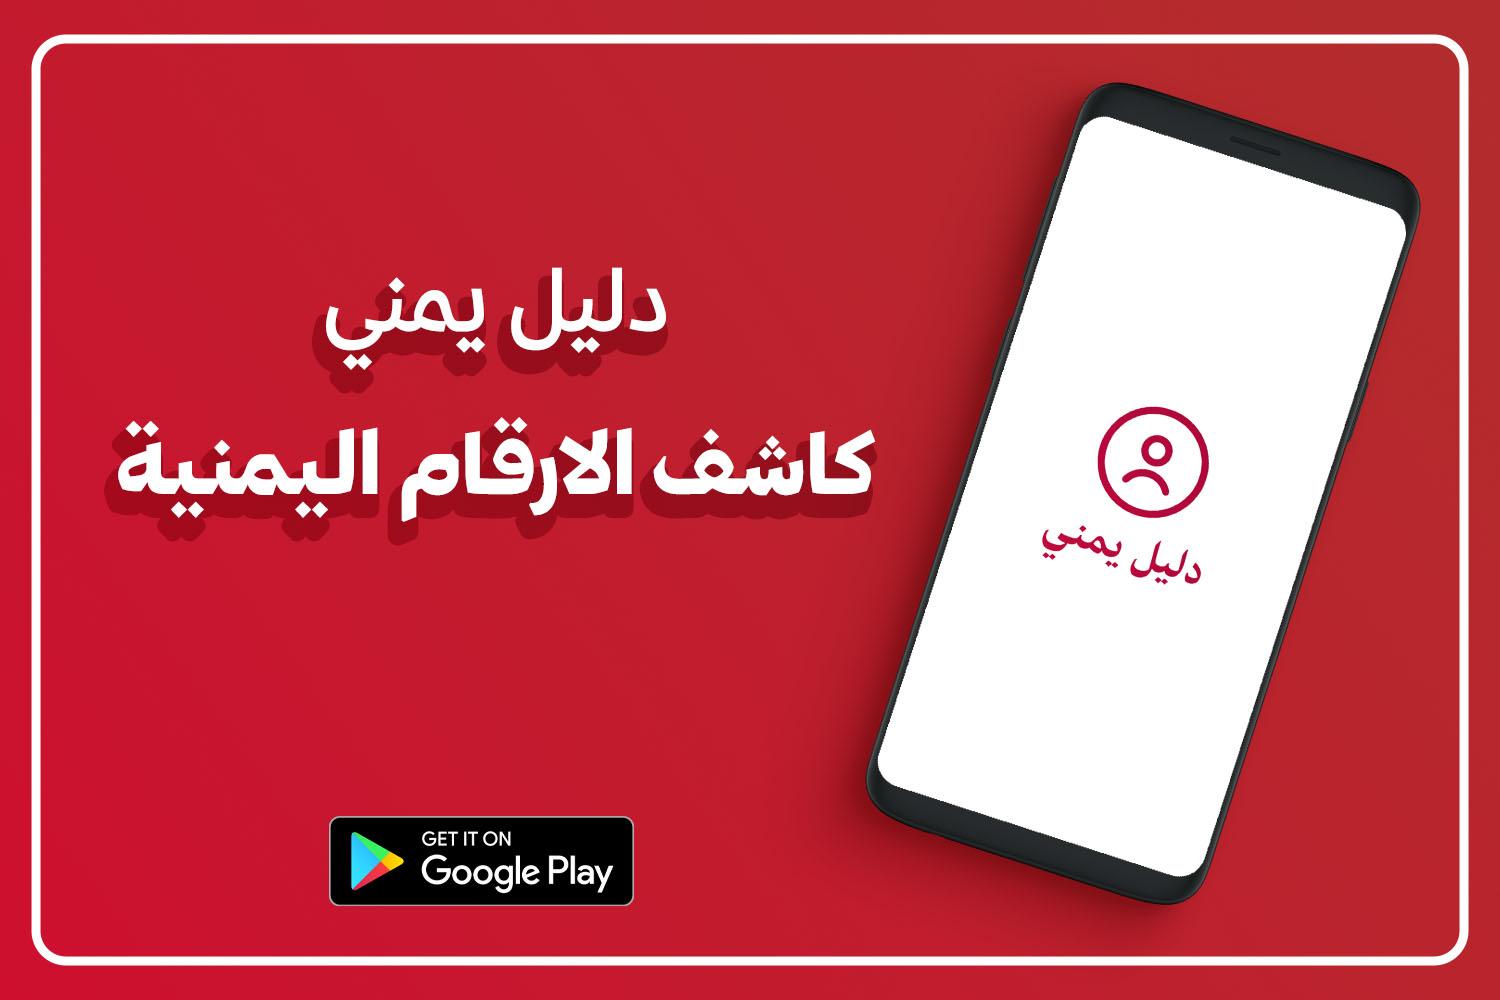 دليل يمني كاشف الارقام اليمنية APK for Android Download